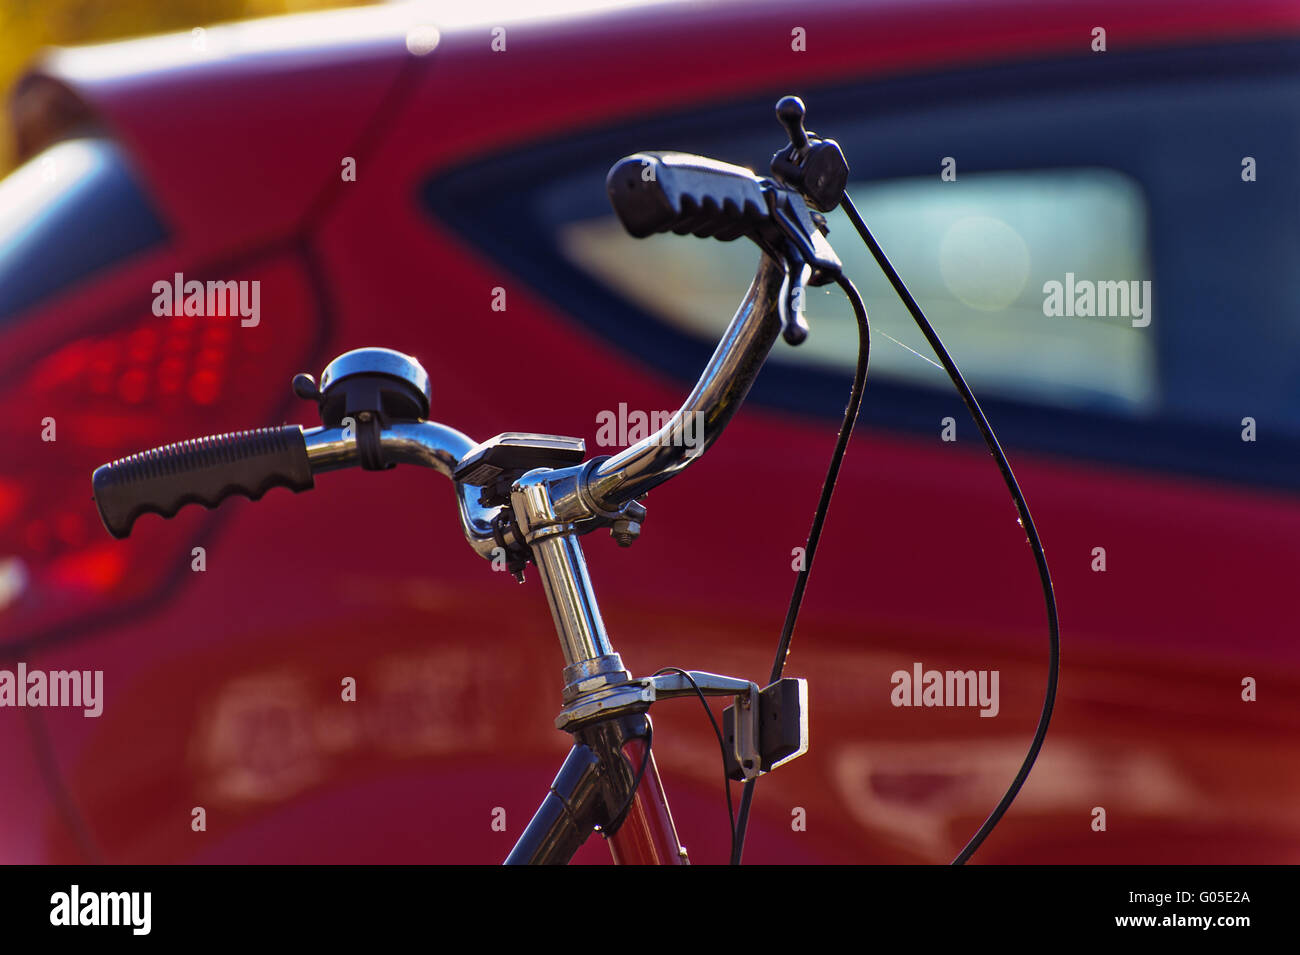 Manubrio di una bicicletta nella parte anteriore di un auto rossa Foto Stock